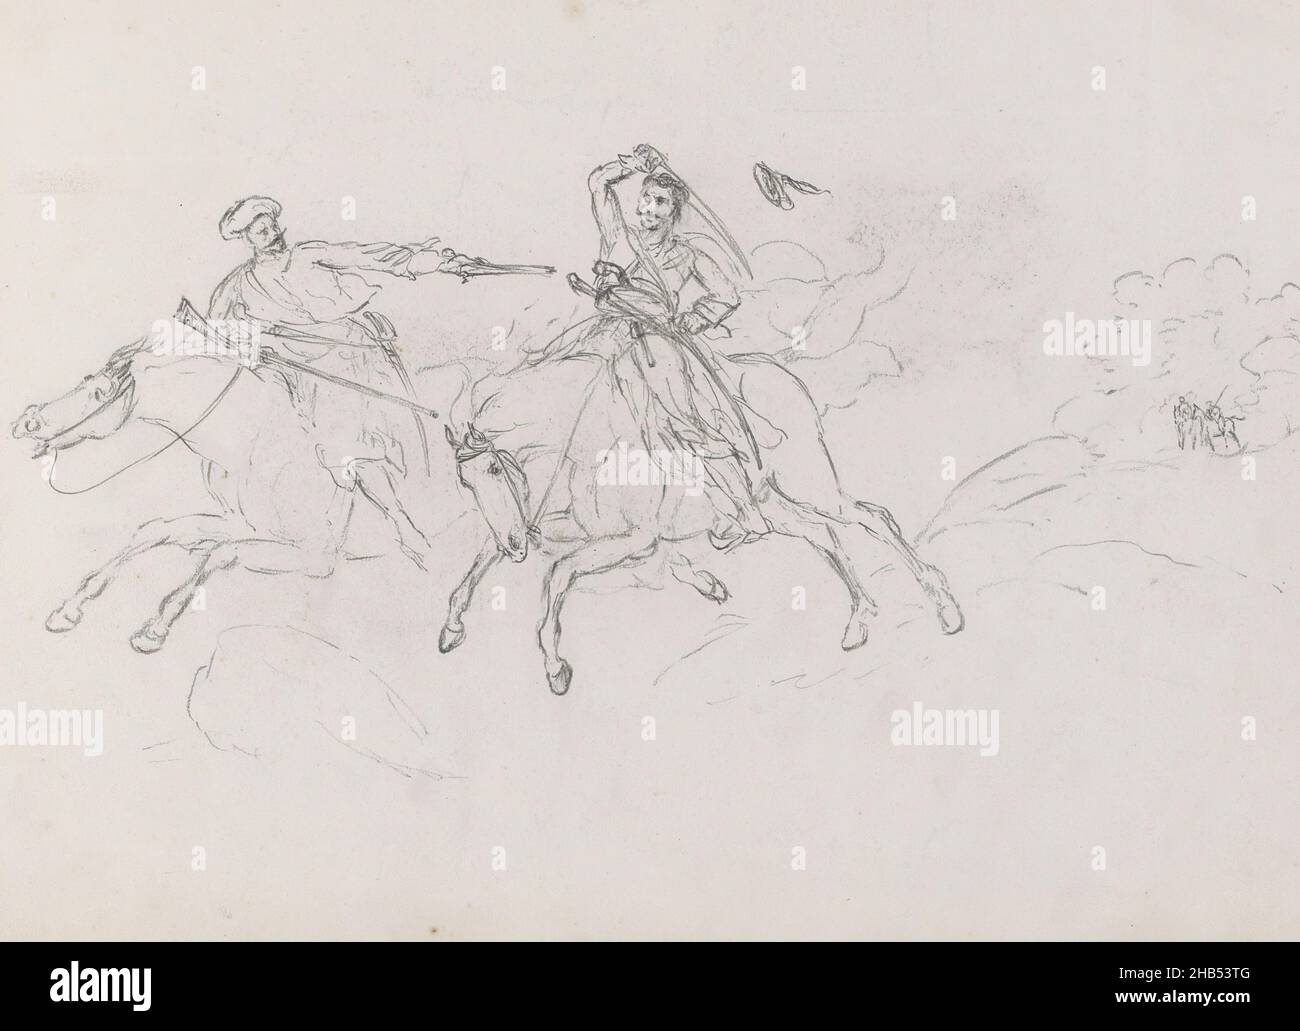 Avec le feu et armes à stab.En arrière-plan, deux autres cavaliers.Feuille 1 recto d'un carnet de croquis de 25 feuilles, deux soldats de combat à cheval., George Hendrik Breitner, 1873 Banque D'Images